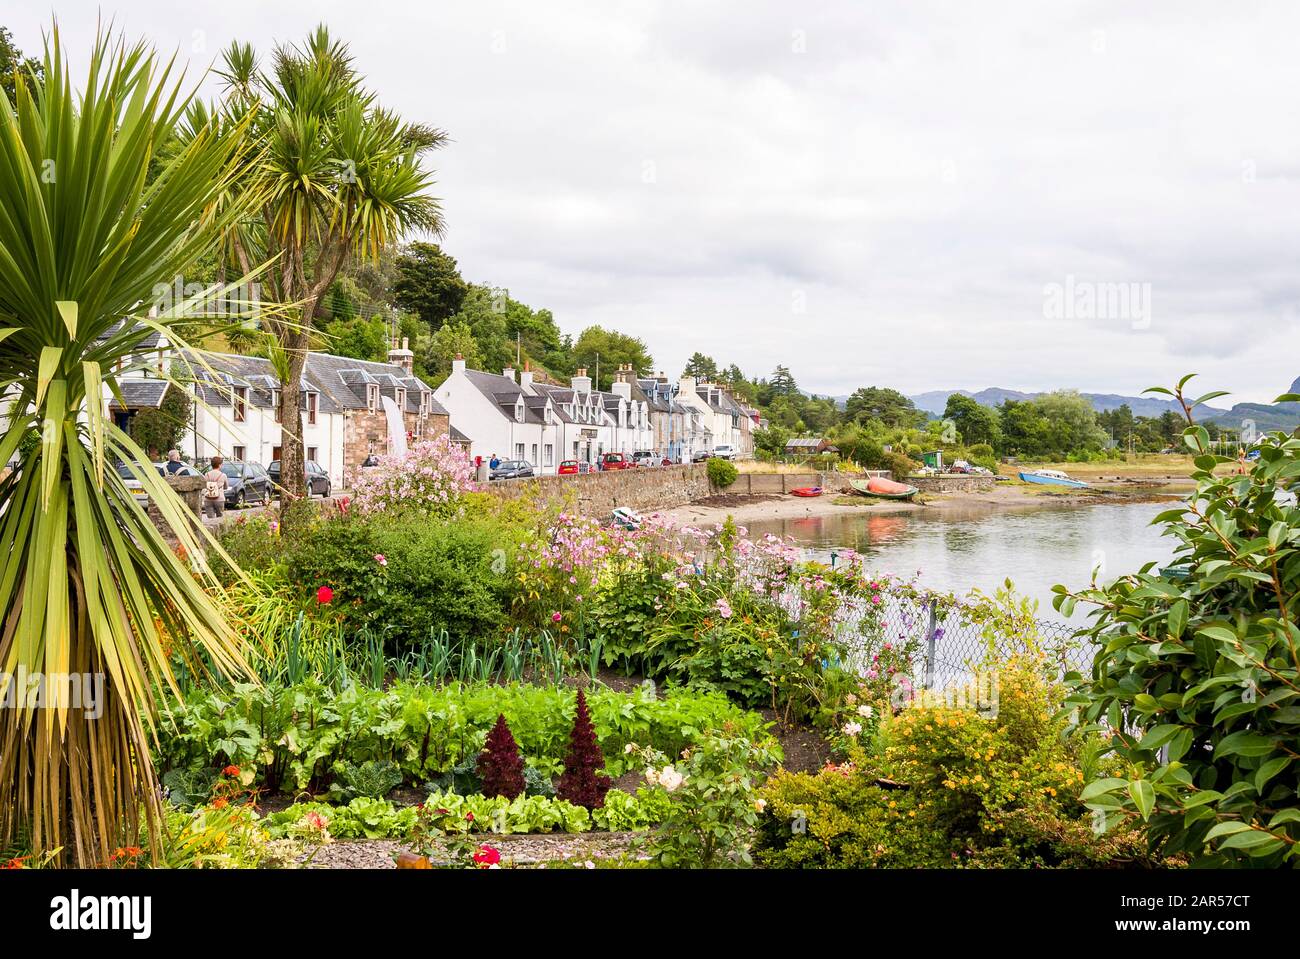 Vue panoramique sur un petit village écossais de Plockton sur la rive du Loch Carron montrant un petit jardin en pots au bord de l'eau, ra Banque D'Images